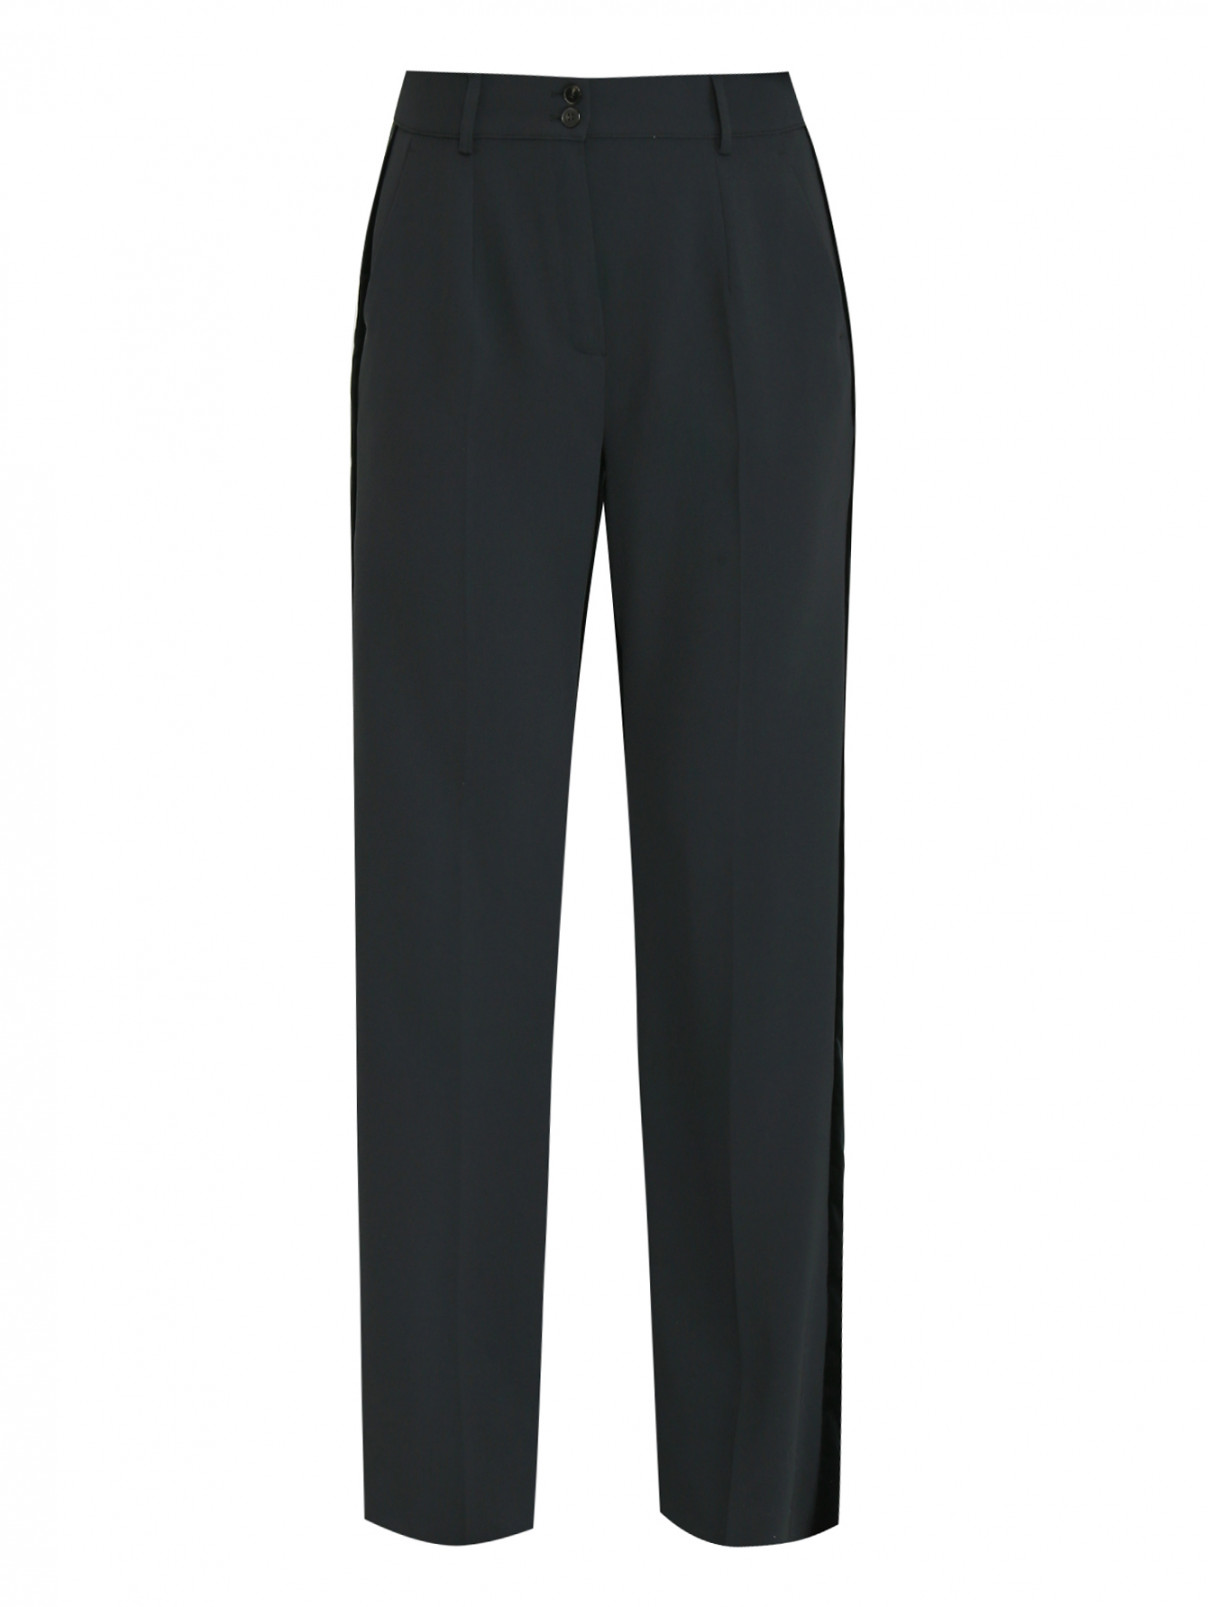 Прямые брюки со стрелками Marina Rinaldi  –  Общий вид  – Цвет:  Зеленый